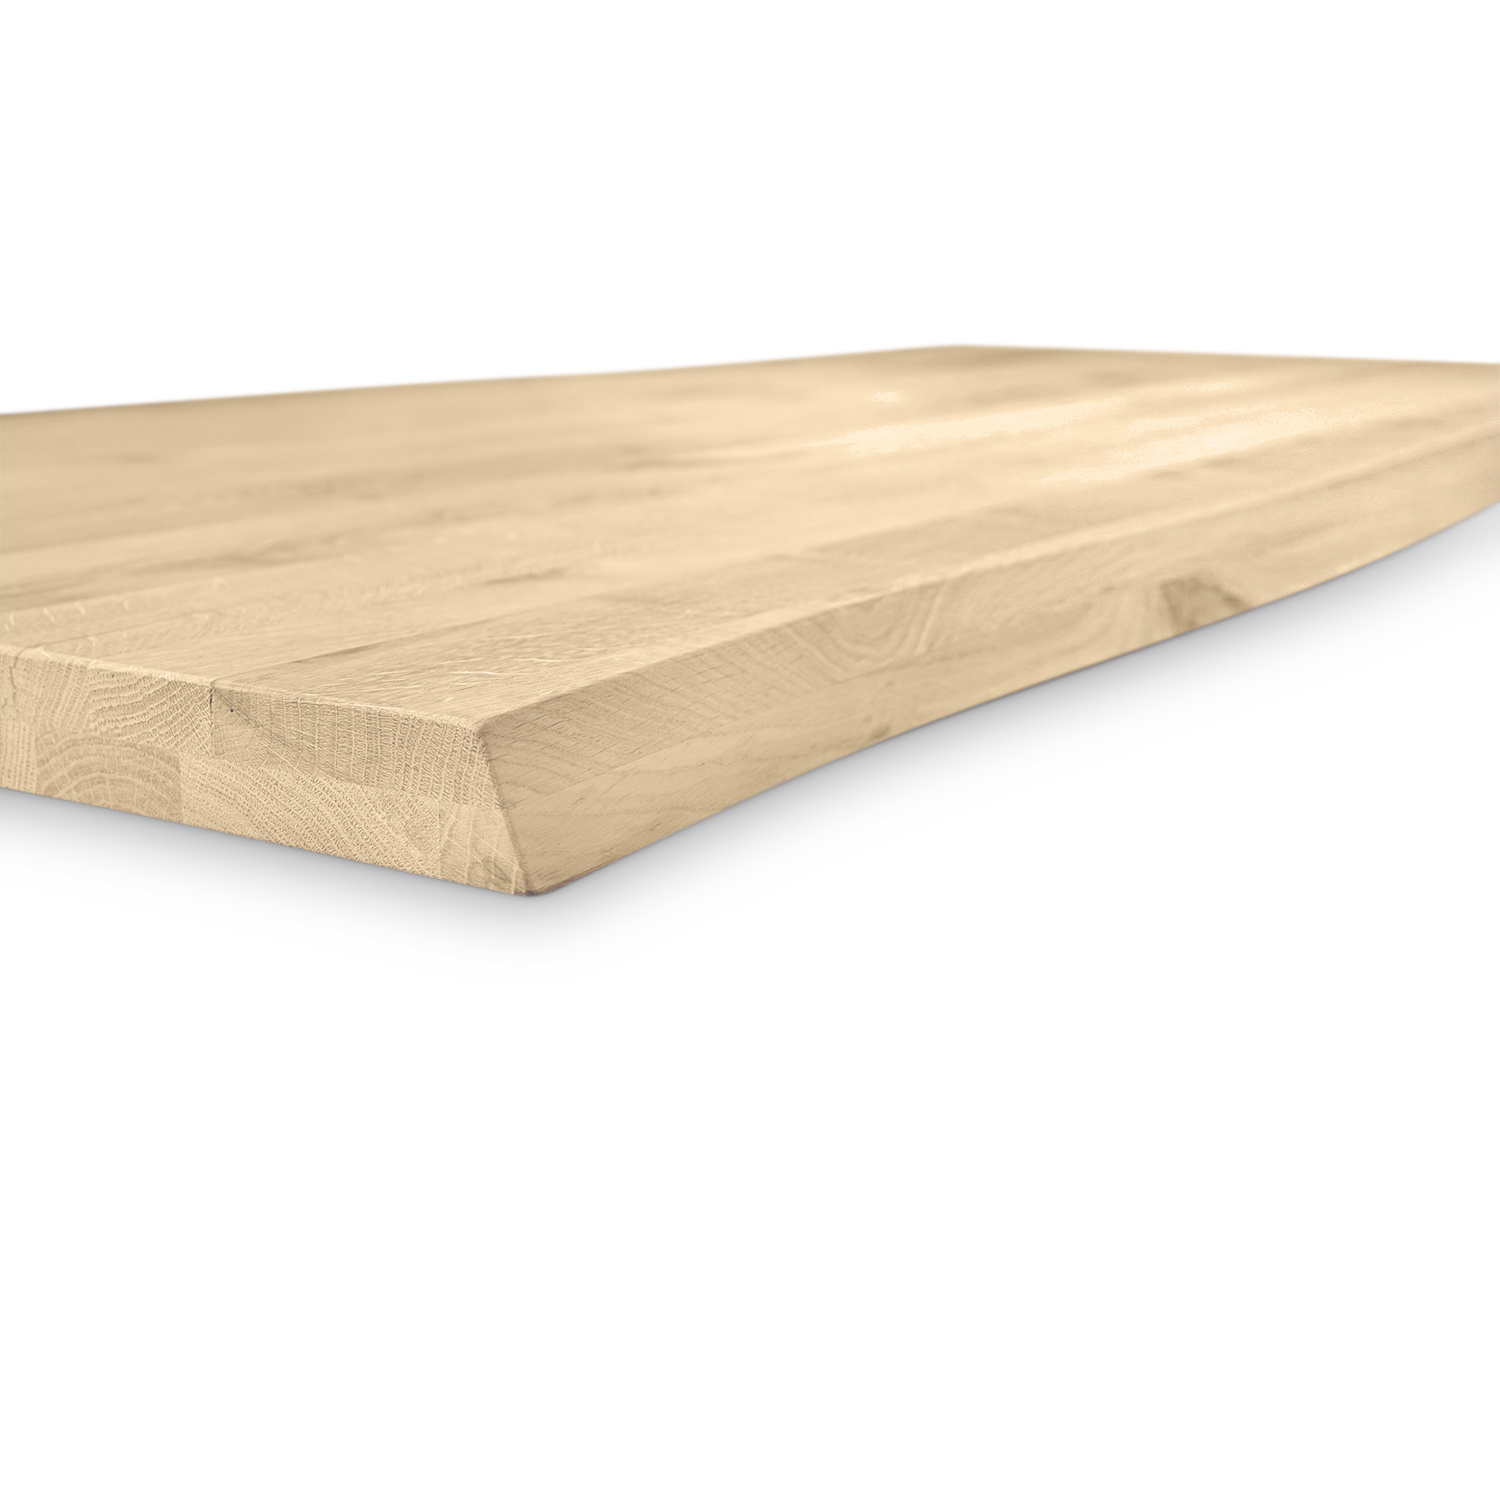  Eiken boomstam tafelblad op maat - 4 cm dik (2 laags)  - met boomstam rand / waankant LOOK -  rustiek Europees eikenhout - verlijmd kd 8-12% - 50-120x50-300 cm